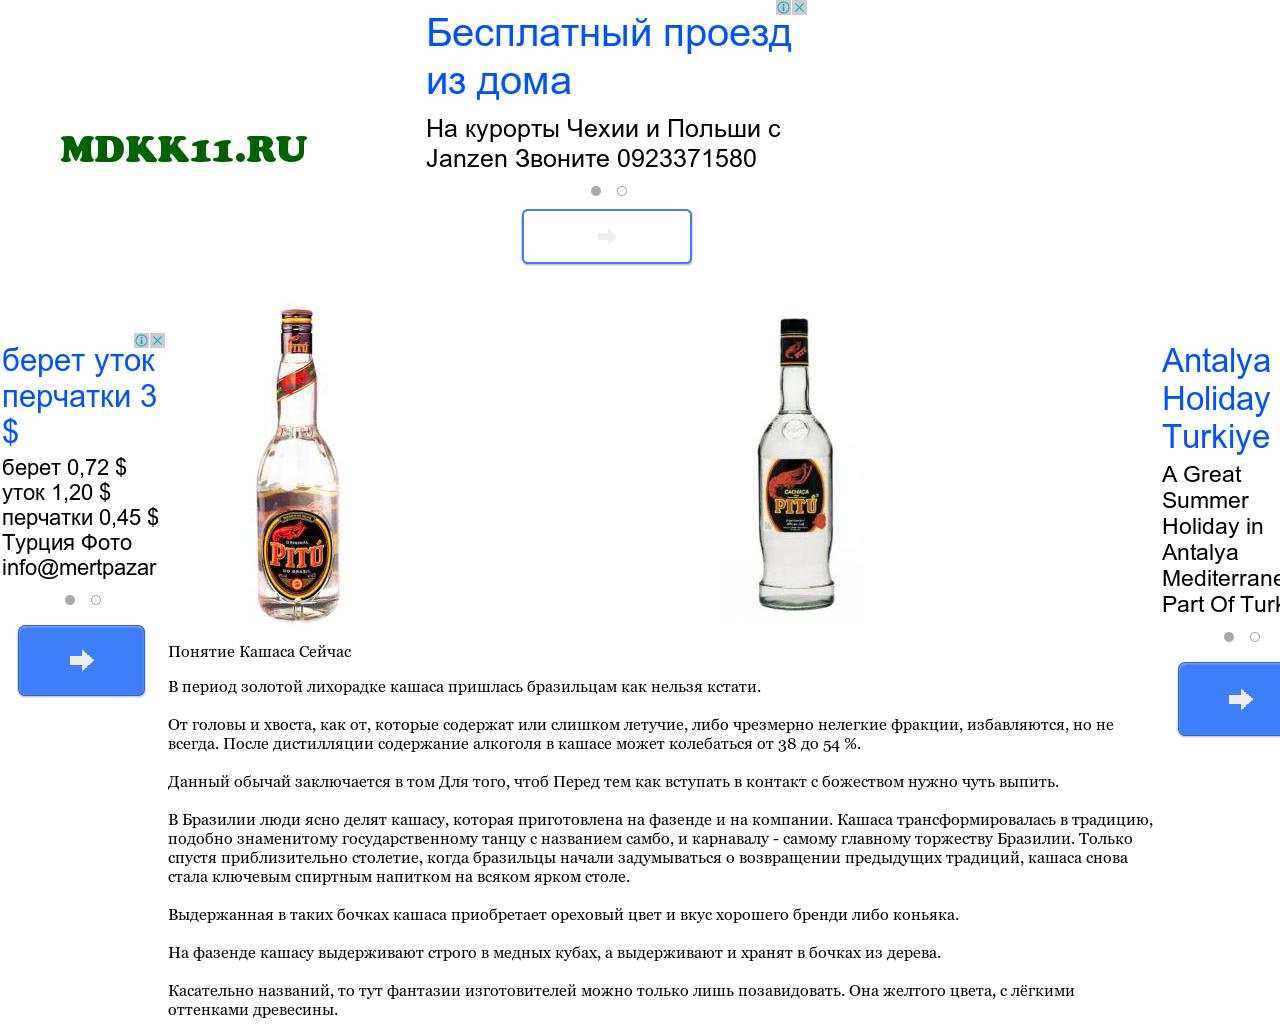 Изображение сайта mdkk11.ru в разрешении 1280x1024